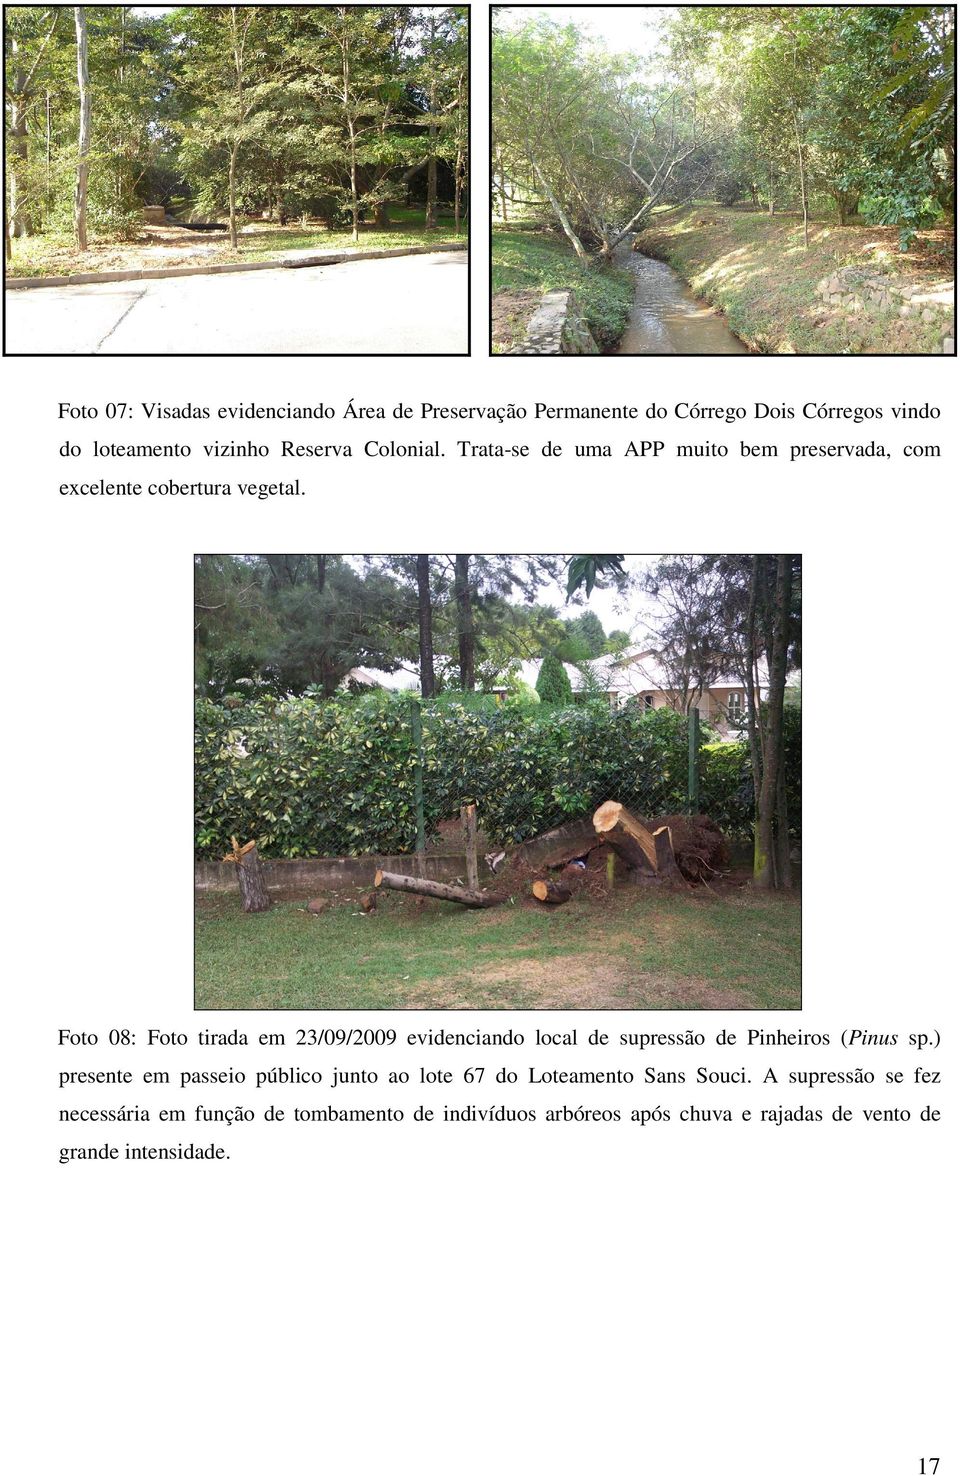 Foto 08: Foto tirada em 23/09/2009 evidenciando local de supressão de Pinheiros (Pinus sp.